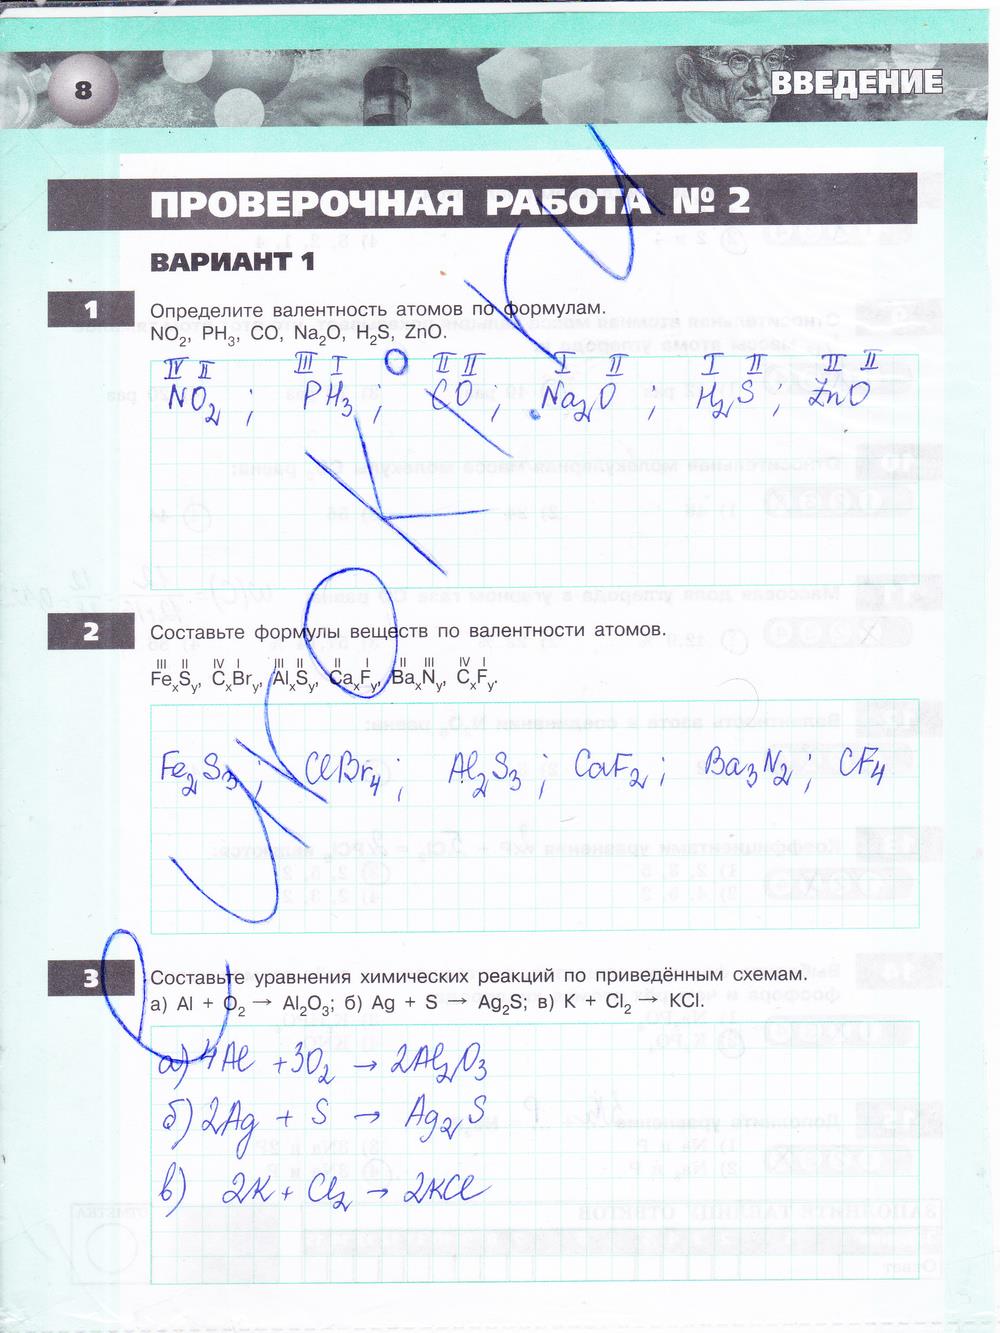 гдз 8 класс тетрадь-экзаменатор страница 8 химия Бобылева, Бирюлина